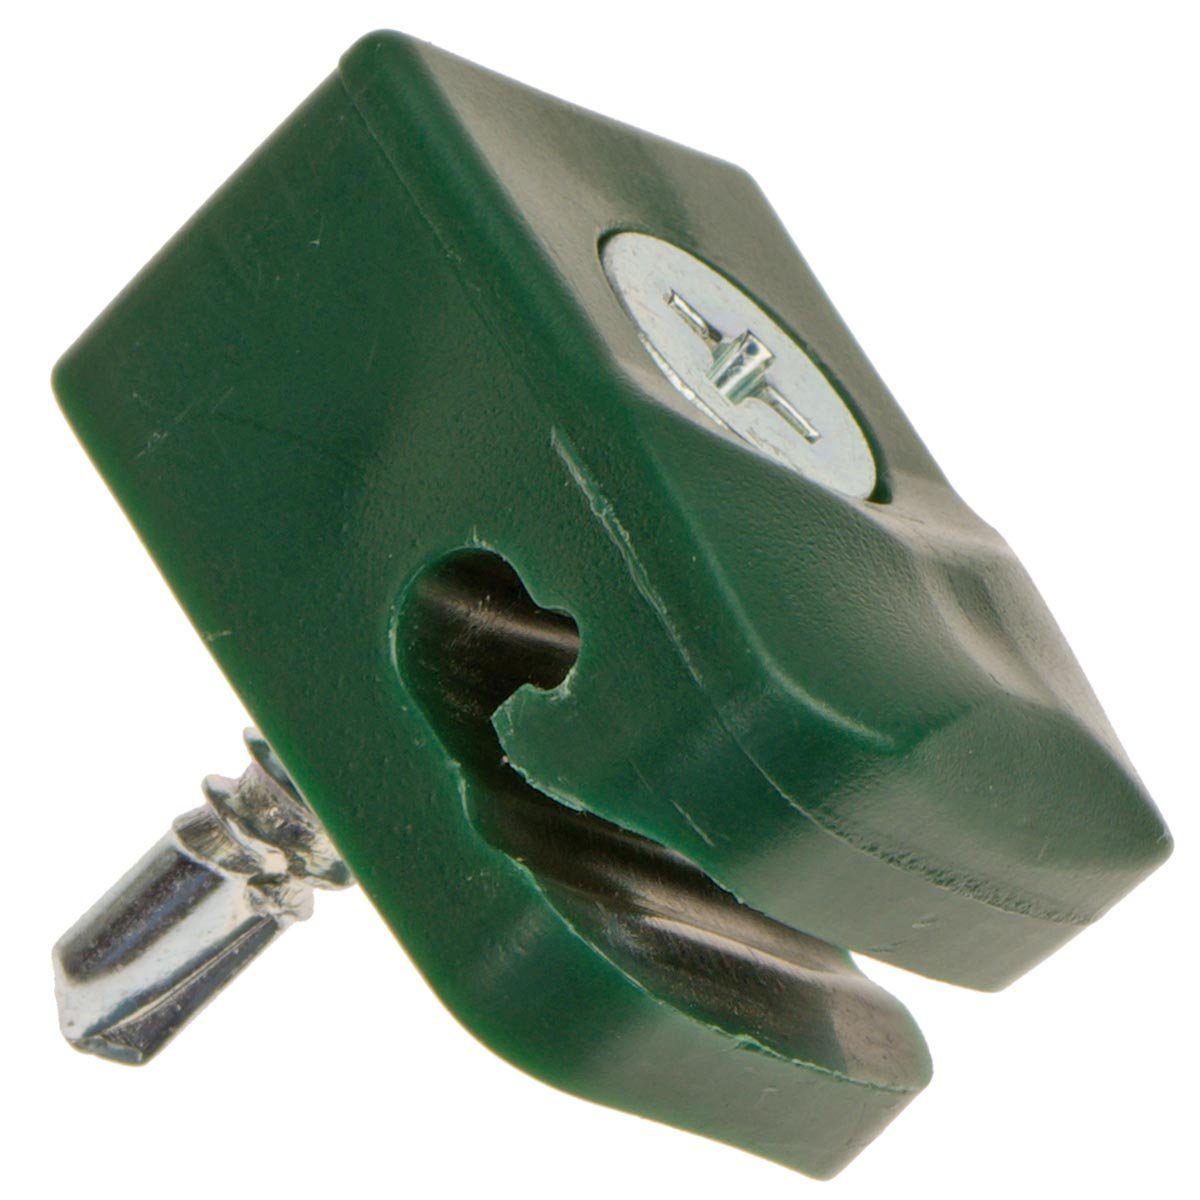 HaGa Drahtspanner 1 Stück Drahthalter mit Schraube Spanndrahthalter 16mm x 26mm in grün, 1-tlg.